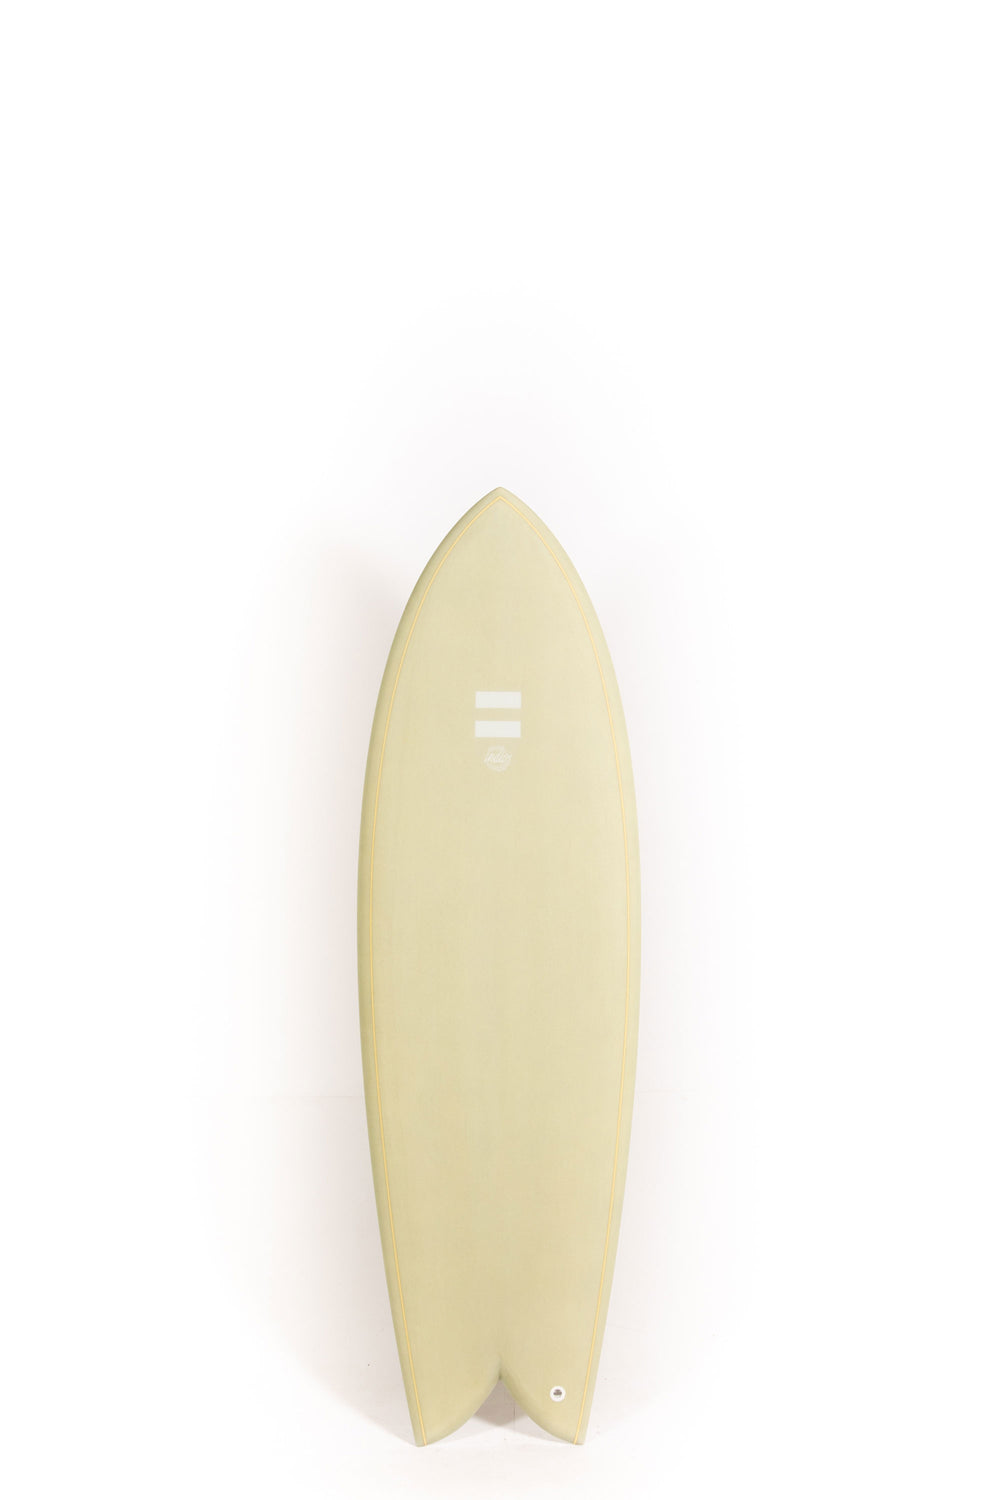 Indio Surfboard - DAB Green Cement- 5’11” x 21 1/4 x 2 5/8 x 39.90L